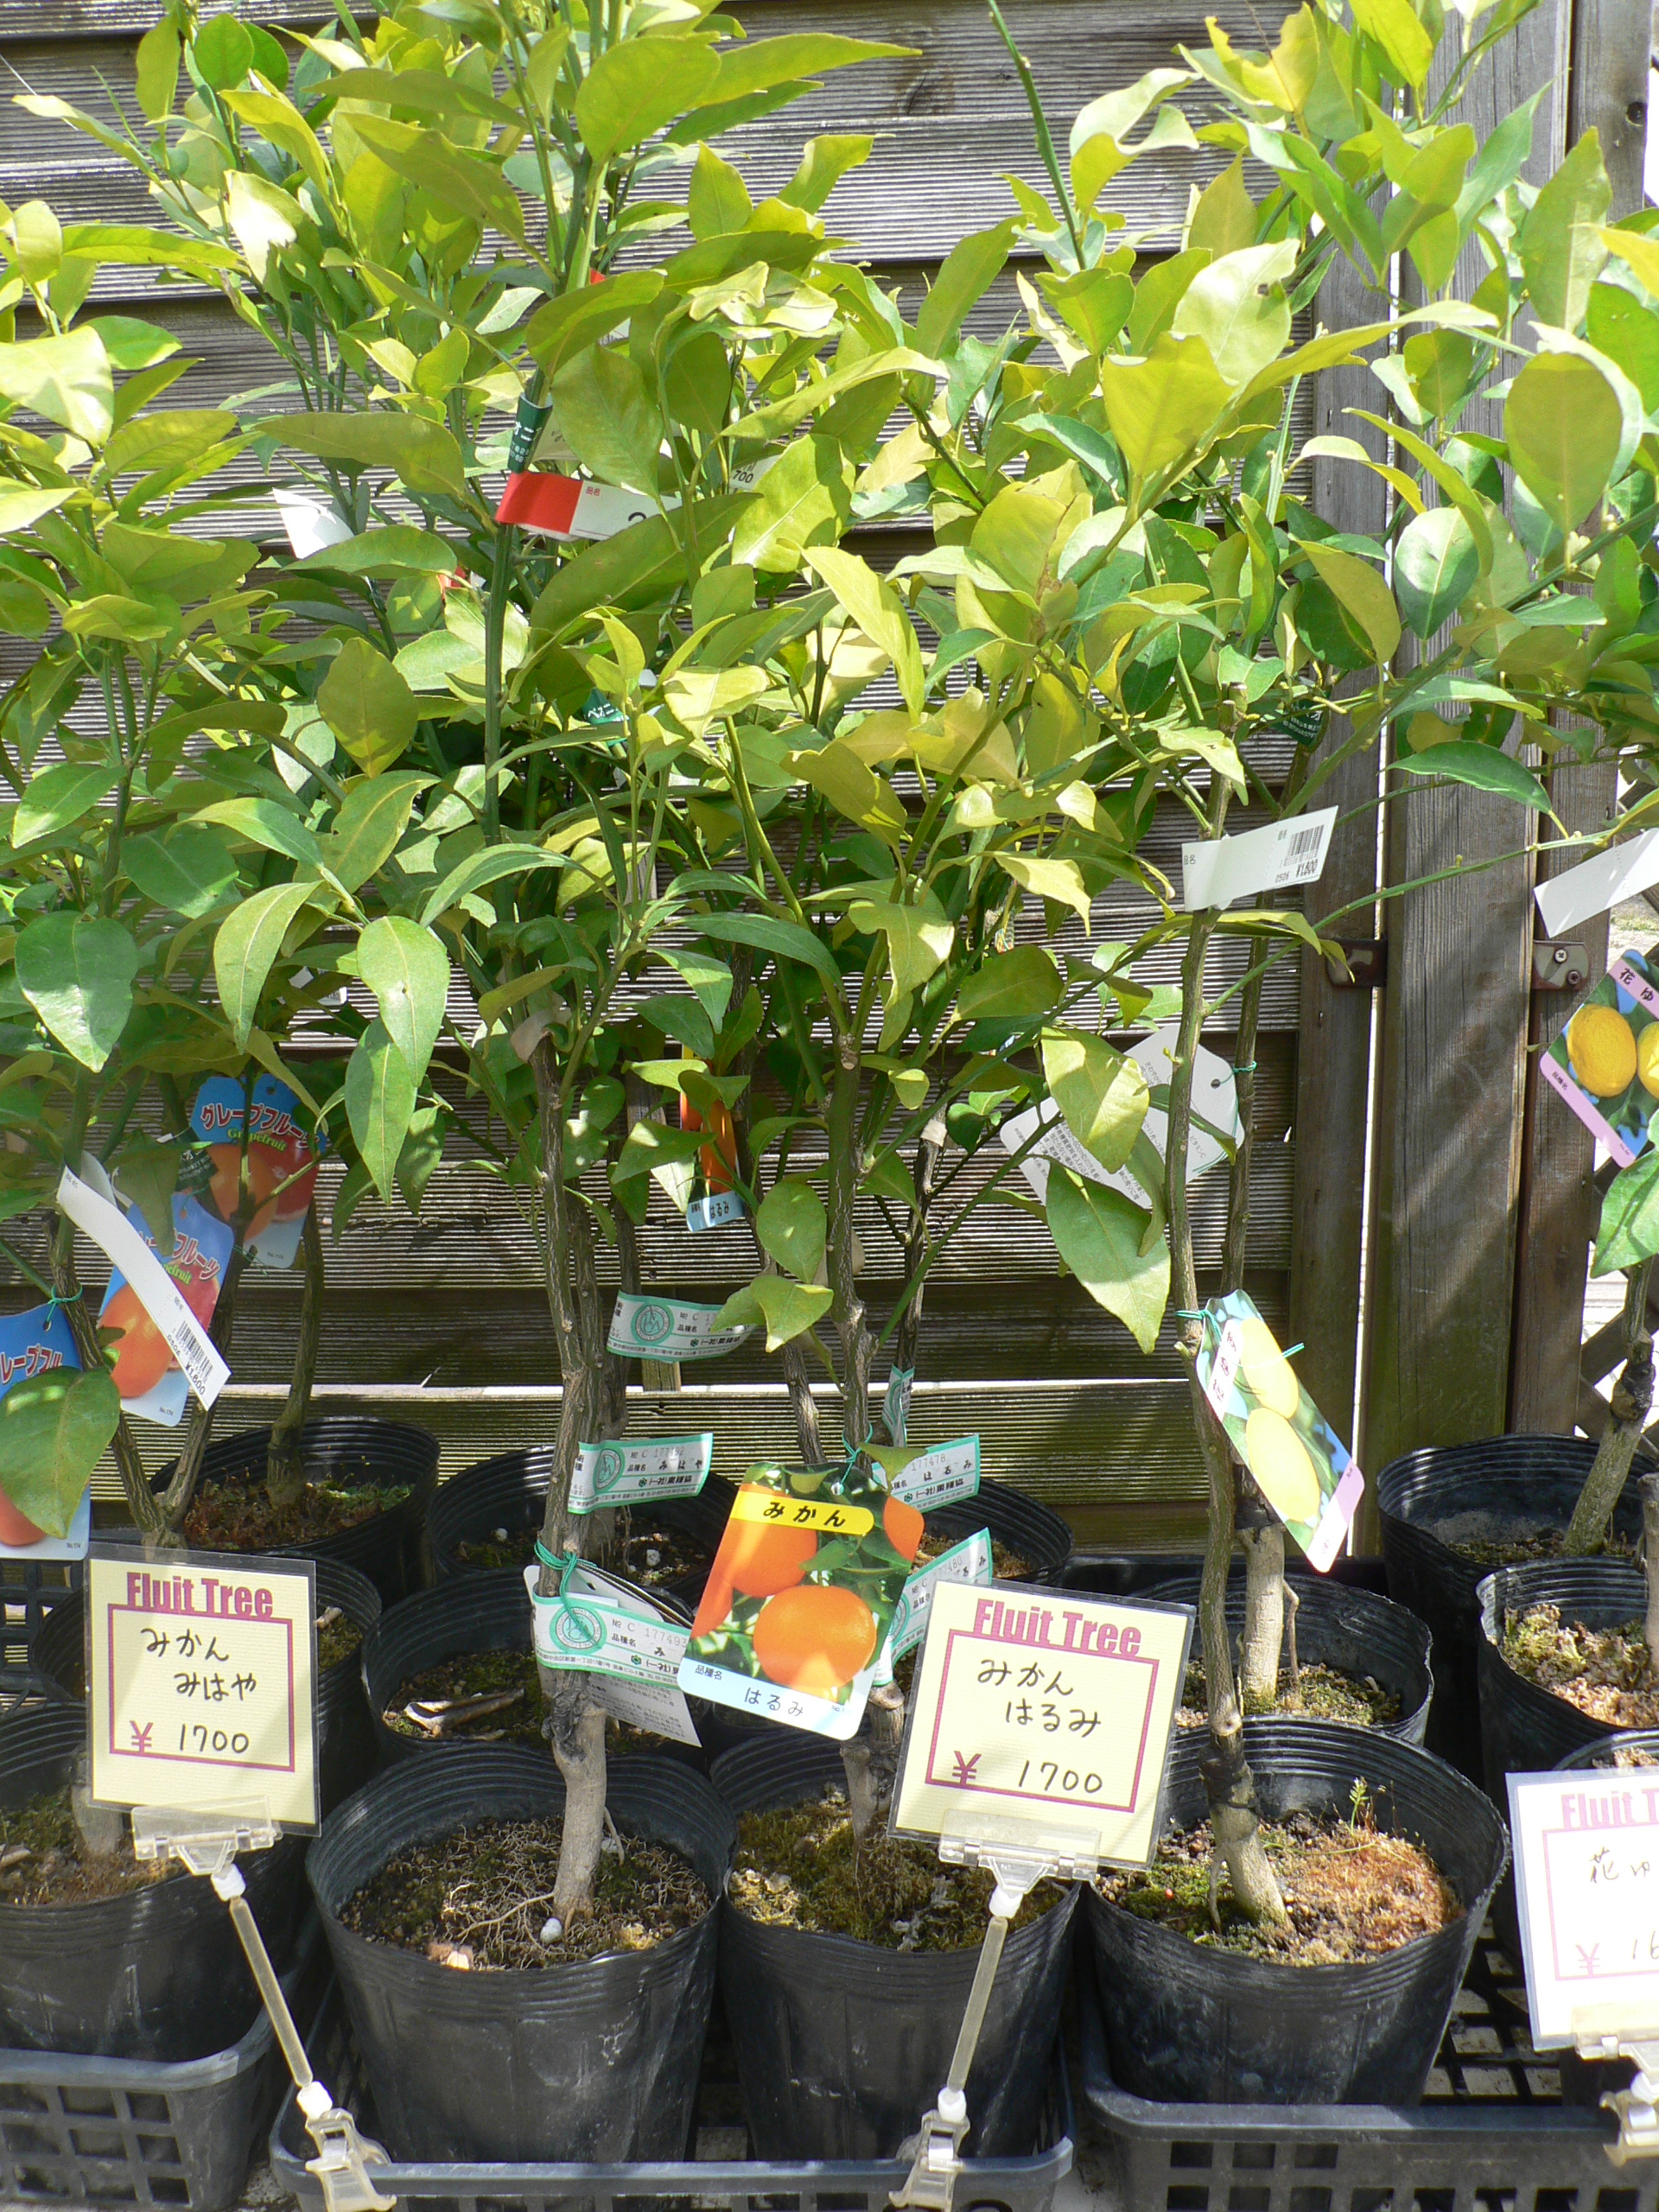 鉢植え果樹の苗木の入手方法と植付けのコツをご紹介 切るを楽しむ アルスコーポレーション株式会社